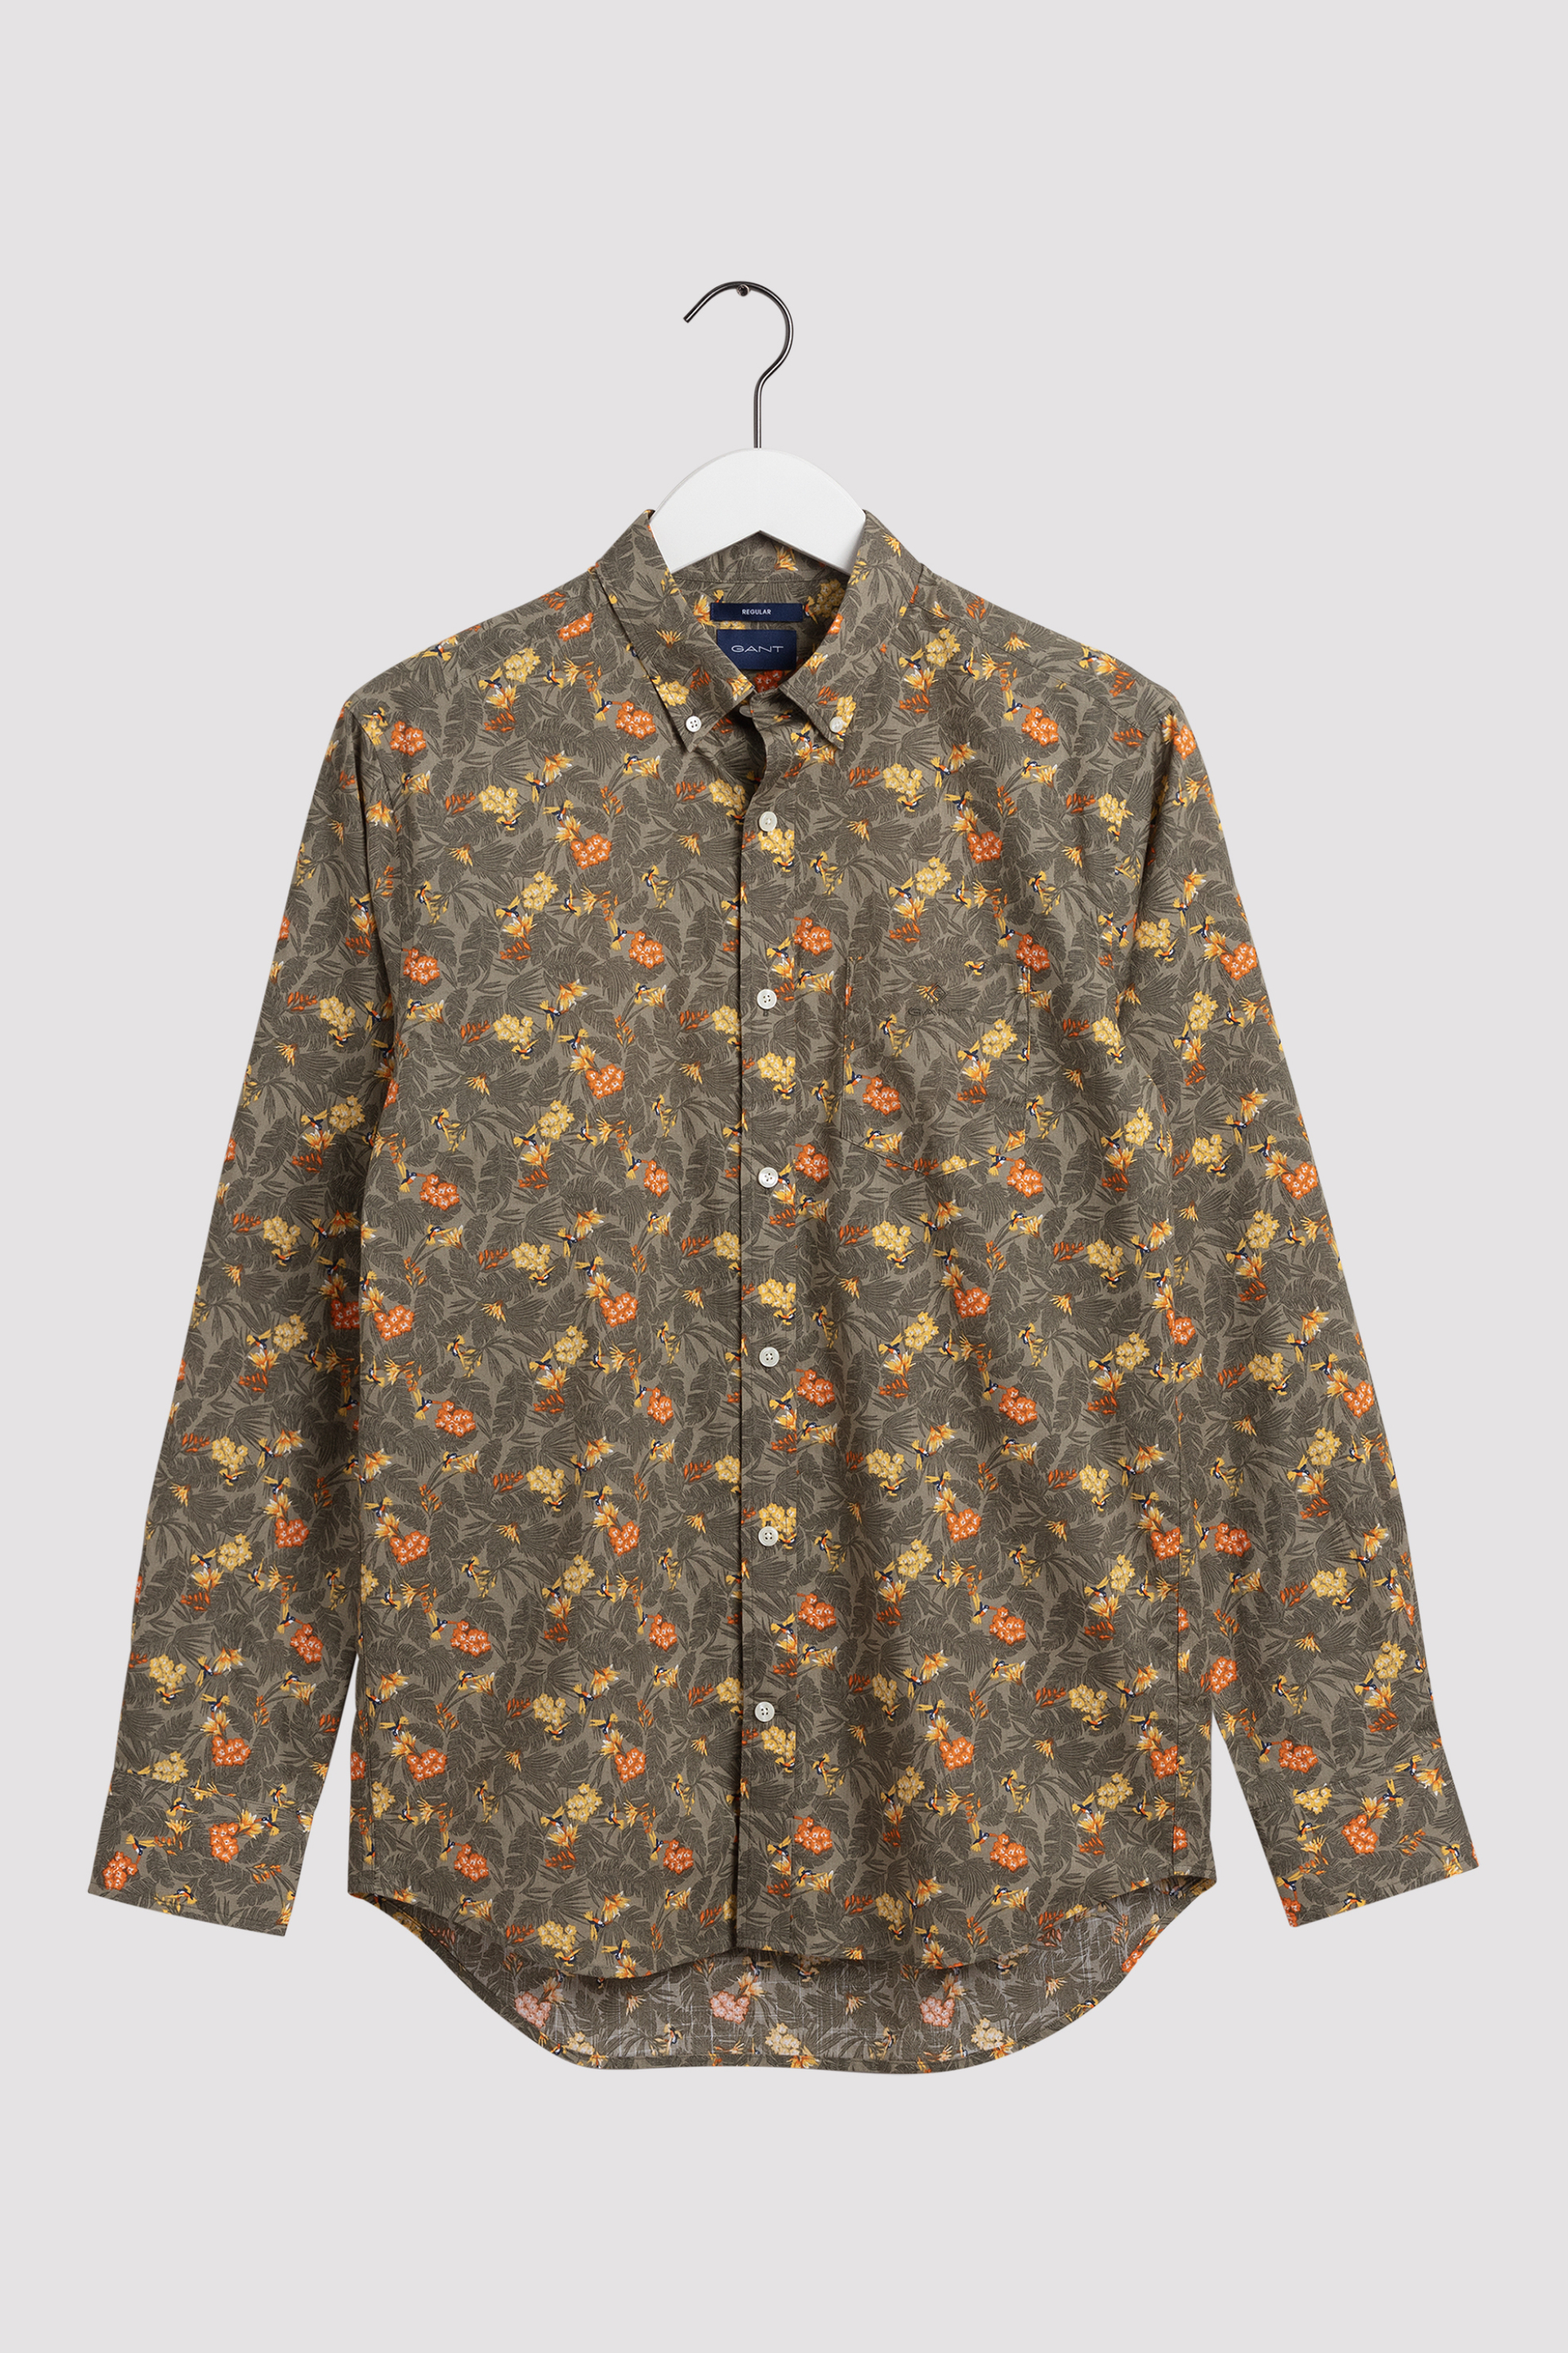 Άνδρας > ΡΟΥΧΑ > Πουκάμισα > Casual Gant ανδρικό πουκάμισο με all-over floral print Regular Fit - 3065500 Χακί